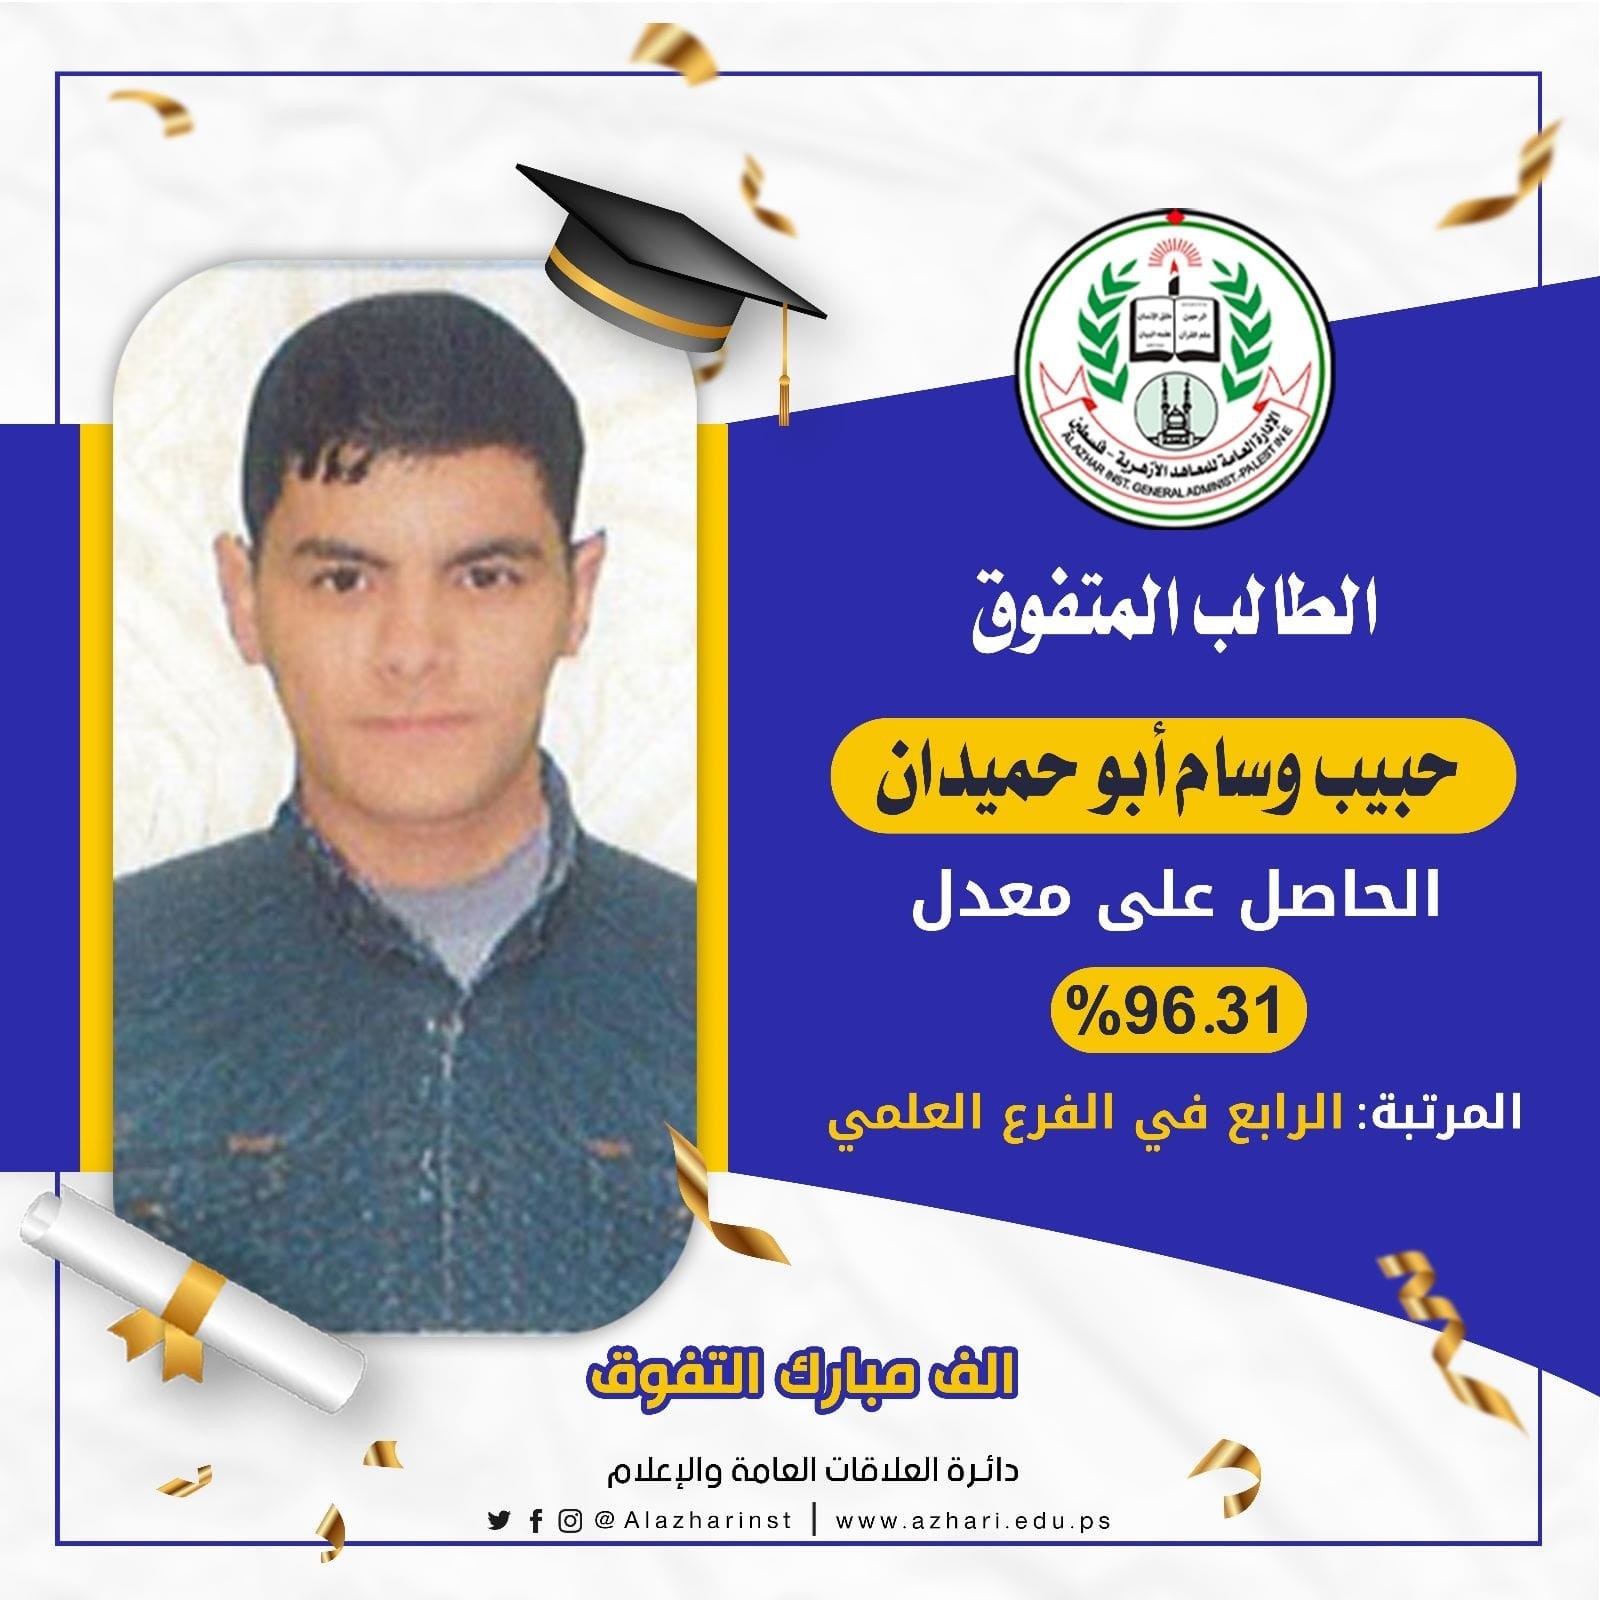 الإعلان عن أسماء أوائل الثانوية العامة في المعهد الأزهري بغزة